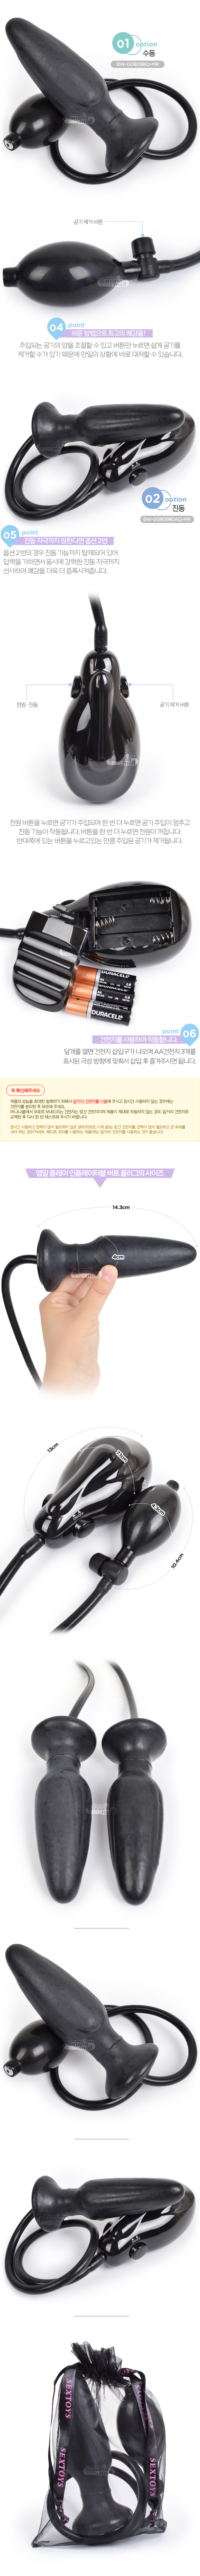 [삽입부 팽창] 엠알 플레이 인플레이터블 버트 플러그(MR PLAY Inflatable Butt Plug) - 바일러(BW-008098Q-MR) (BIR)